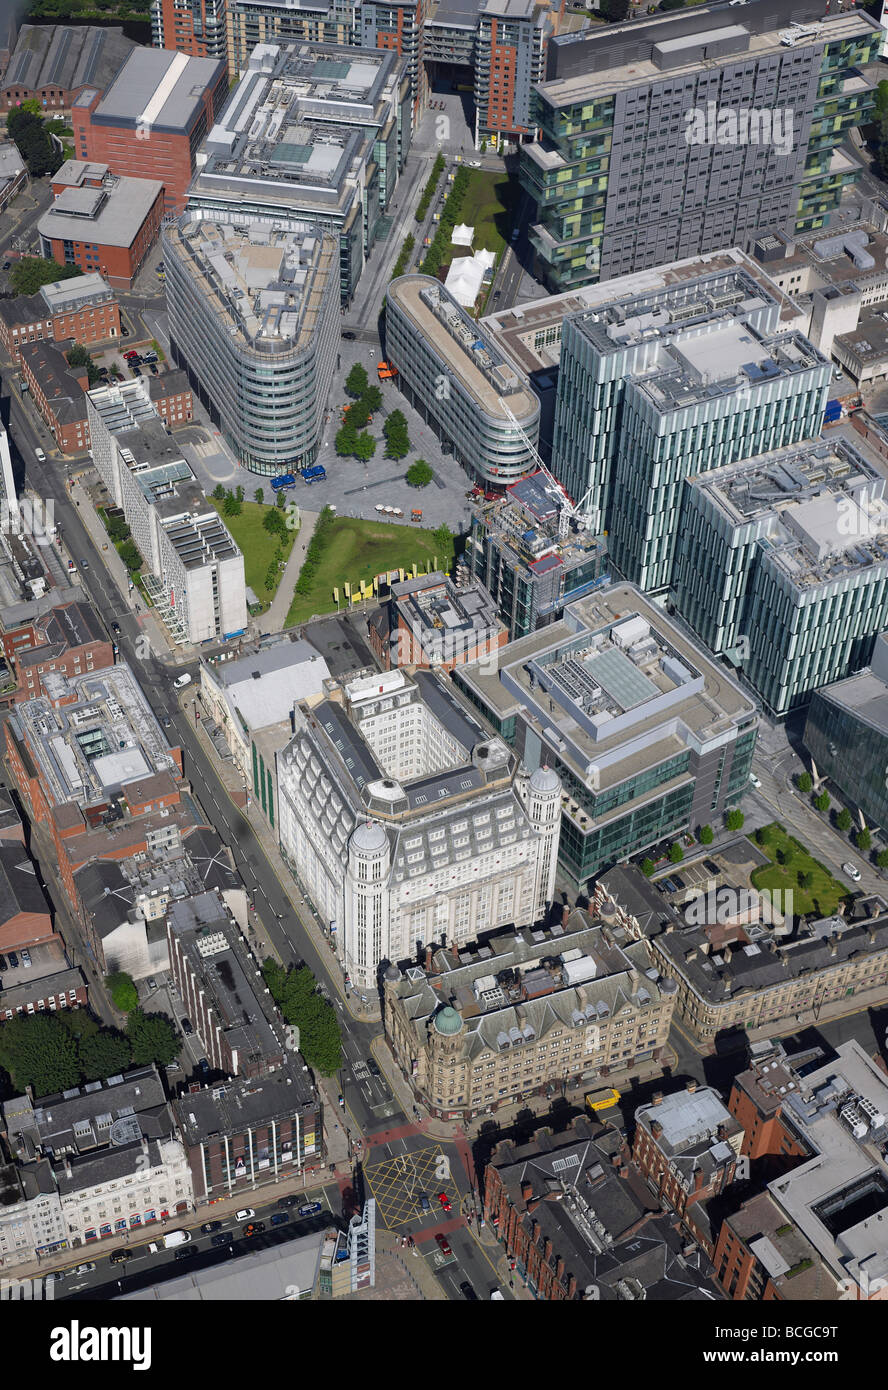 Il centro della città di Manchester, Quay Street e la zona business, dall'aria, luglio 2009, l'Inghilterra settentrionale Foto Stock